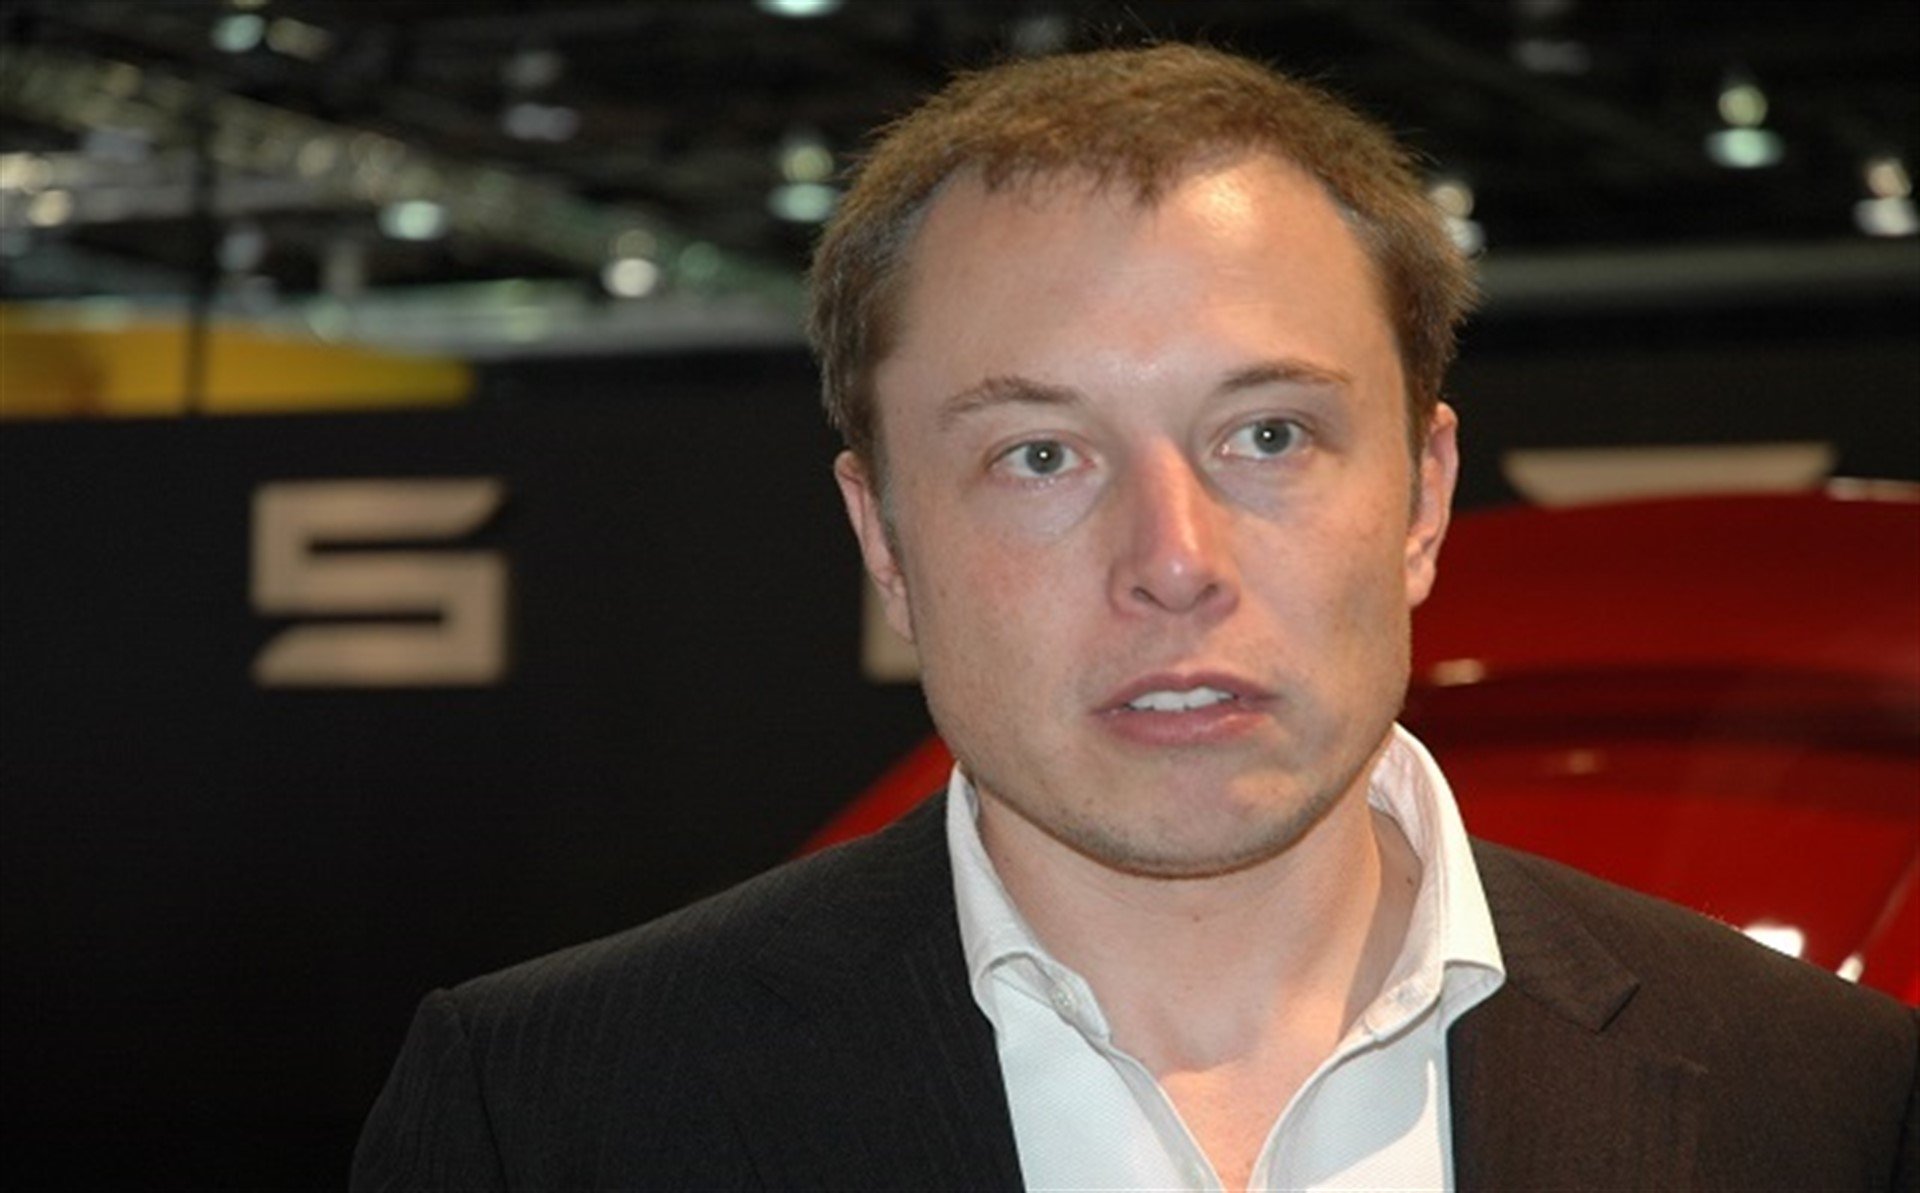 La Comissió de Borsa i Valors americana acusa Elon Musk de frau